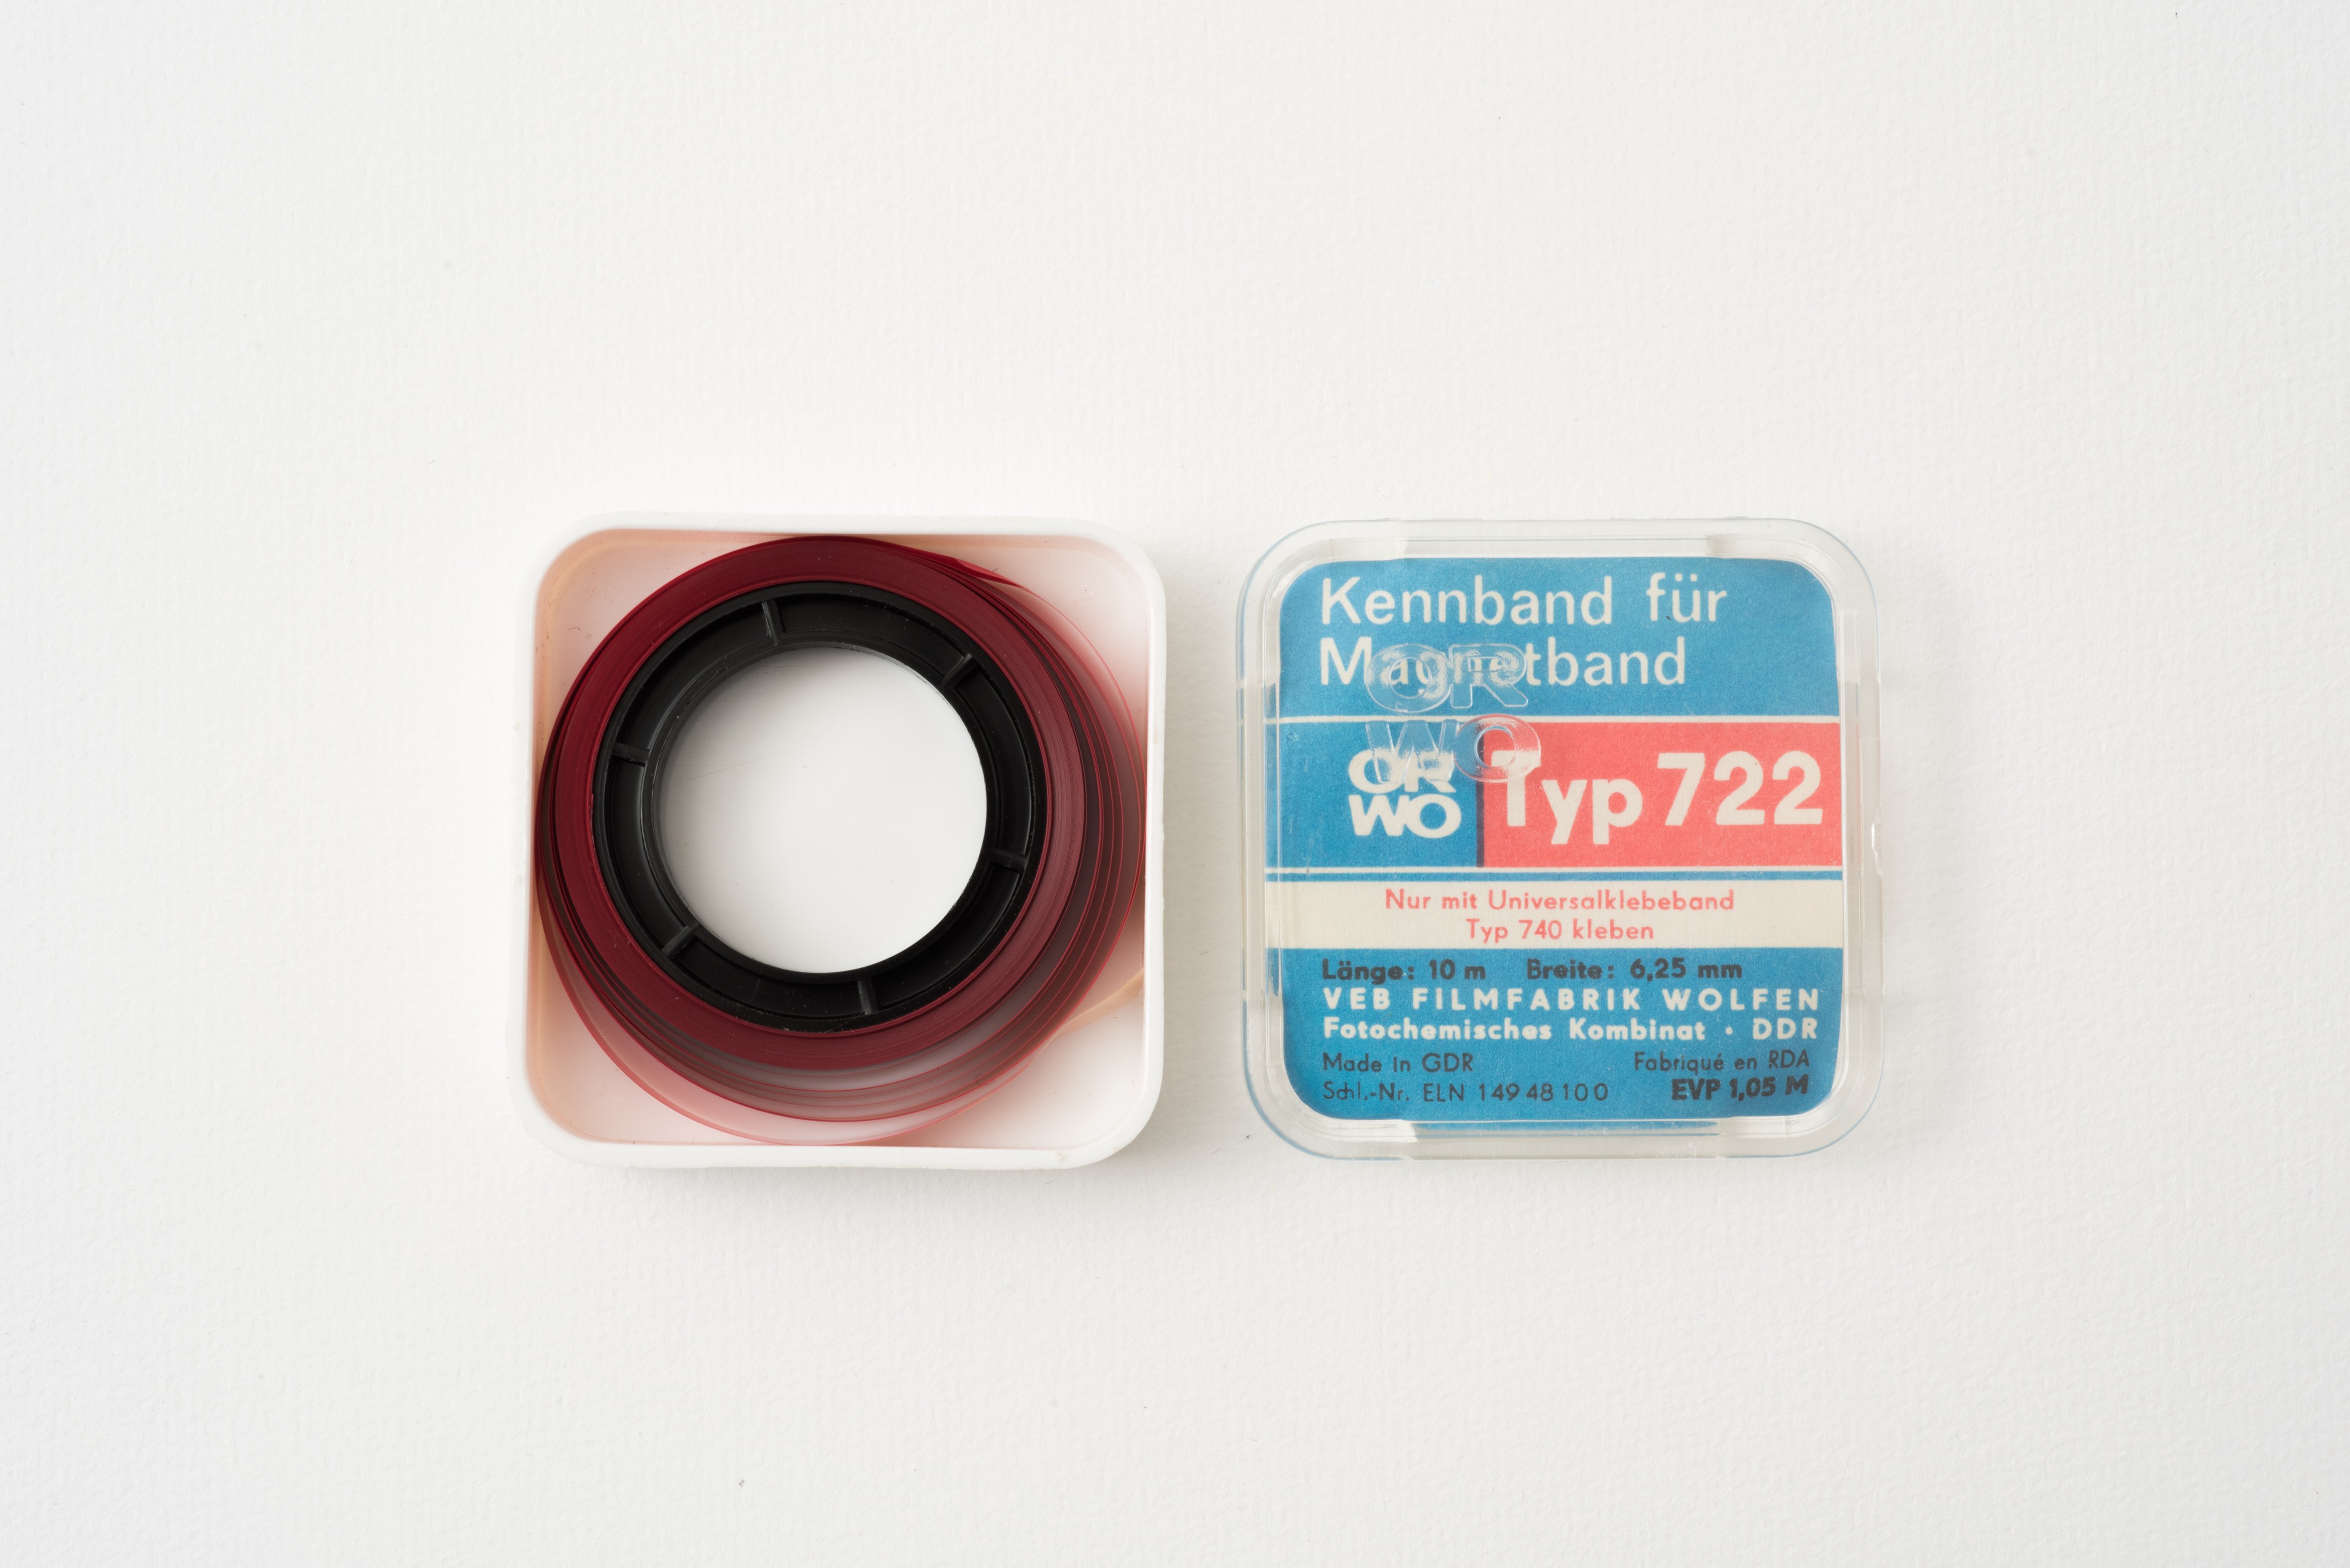 Kennband für Magnetband ORWO (Museum Utopie und Alltag. Alltagskultur und Kunst aus der DDR CC BY-NC-SA)